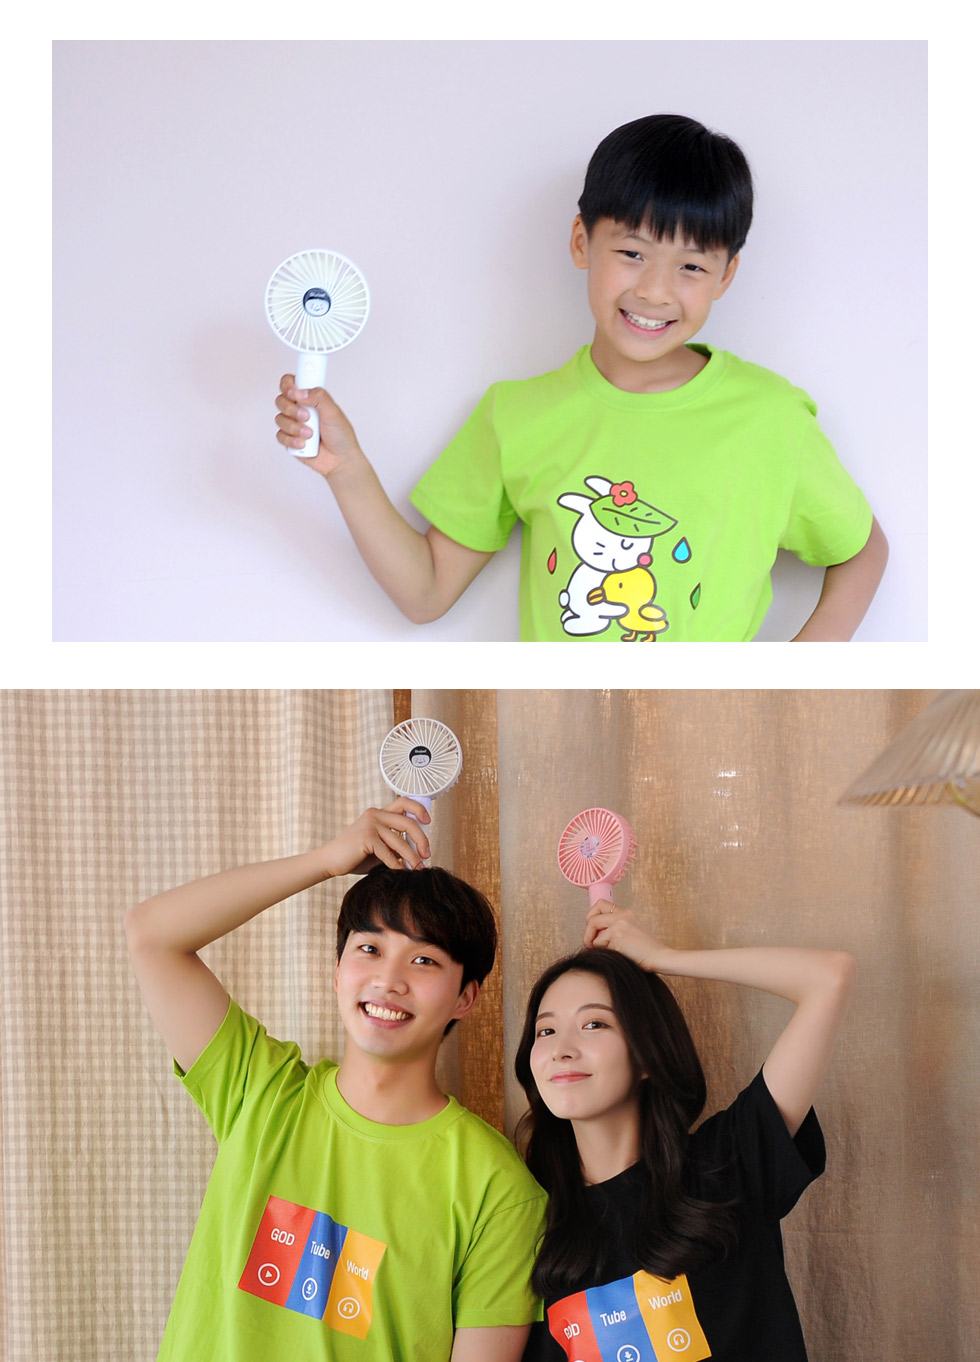 휴대용선풍기 '샬롬' 3종 어린이 사용사진 남녀노소 누구에게나 사랑스러운 디자인, 간편한 사용법